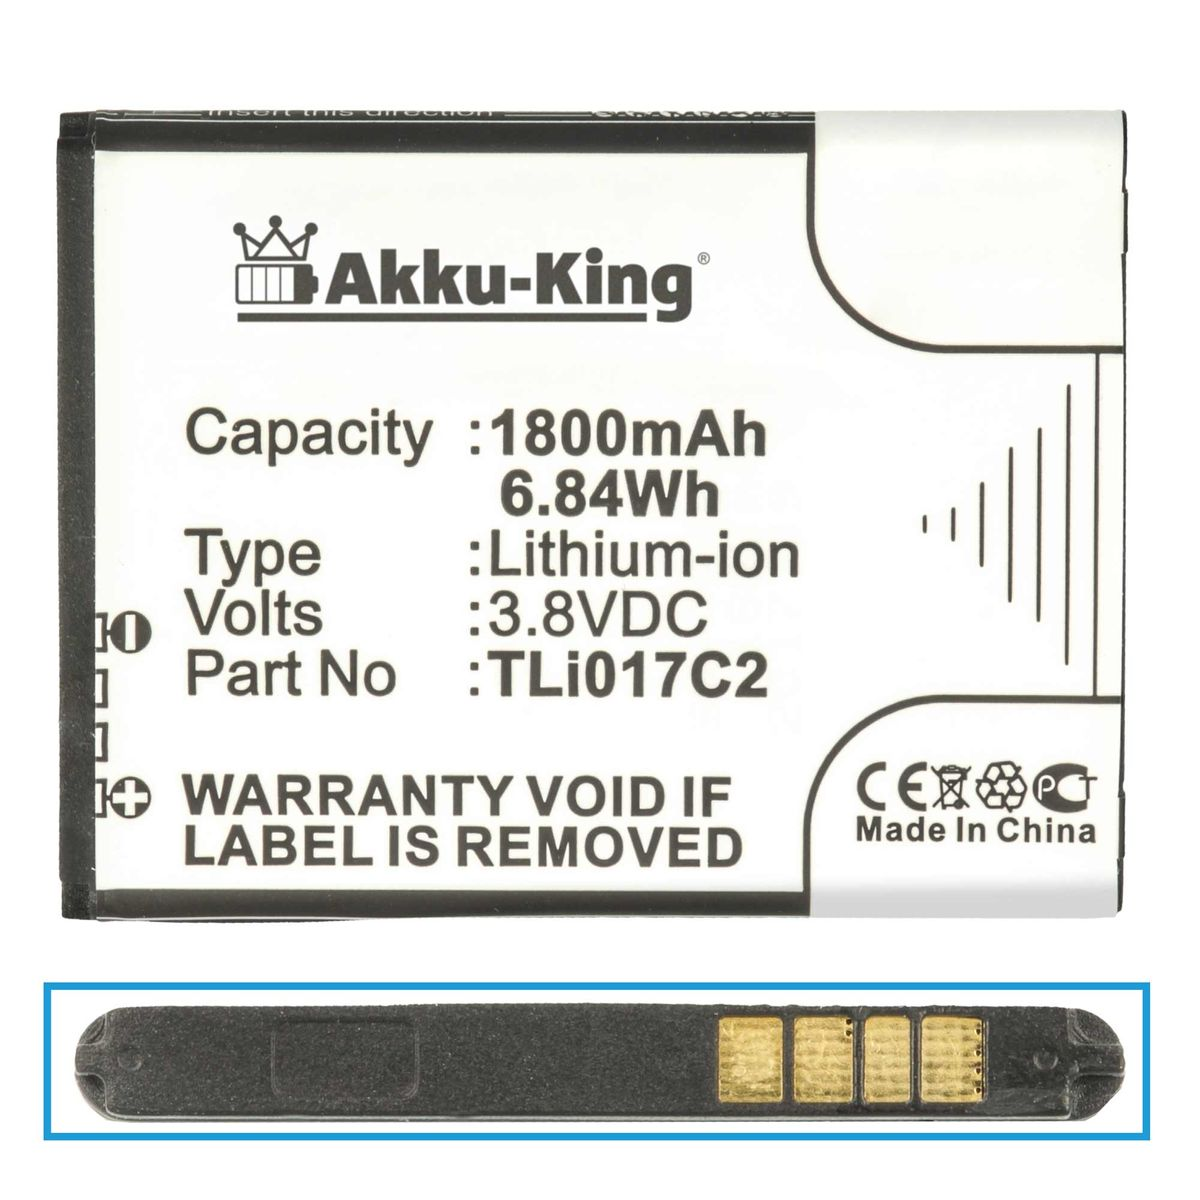 AKKU-KING Akku kompatibel mit 1800mAh Volt, Li-Ion TLi017C2 Vodafone 3.8 Handy-Akku